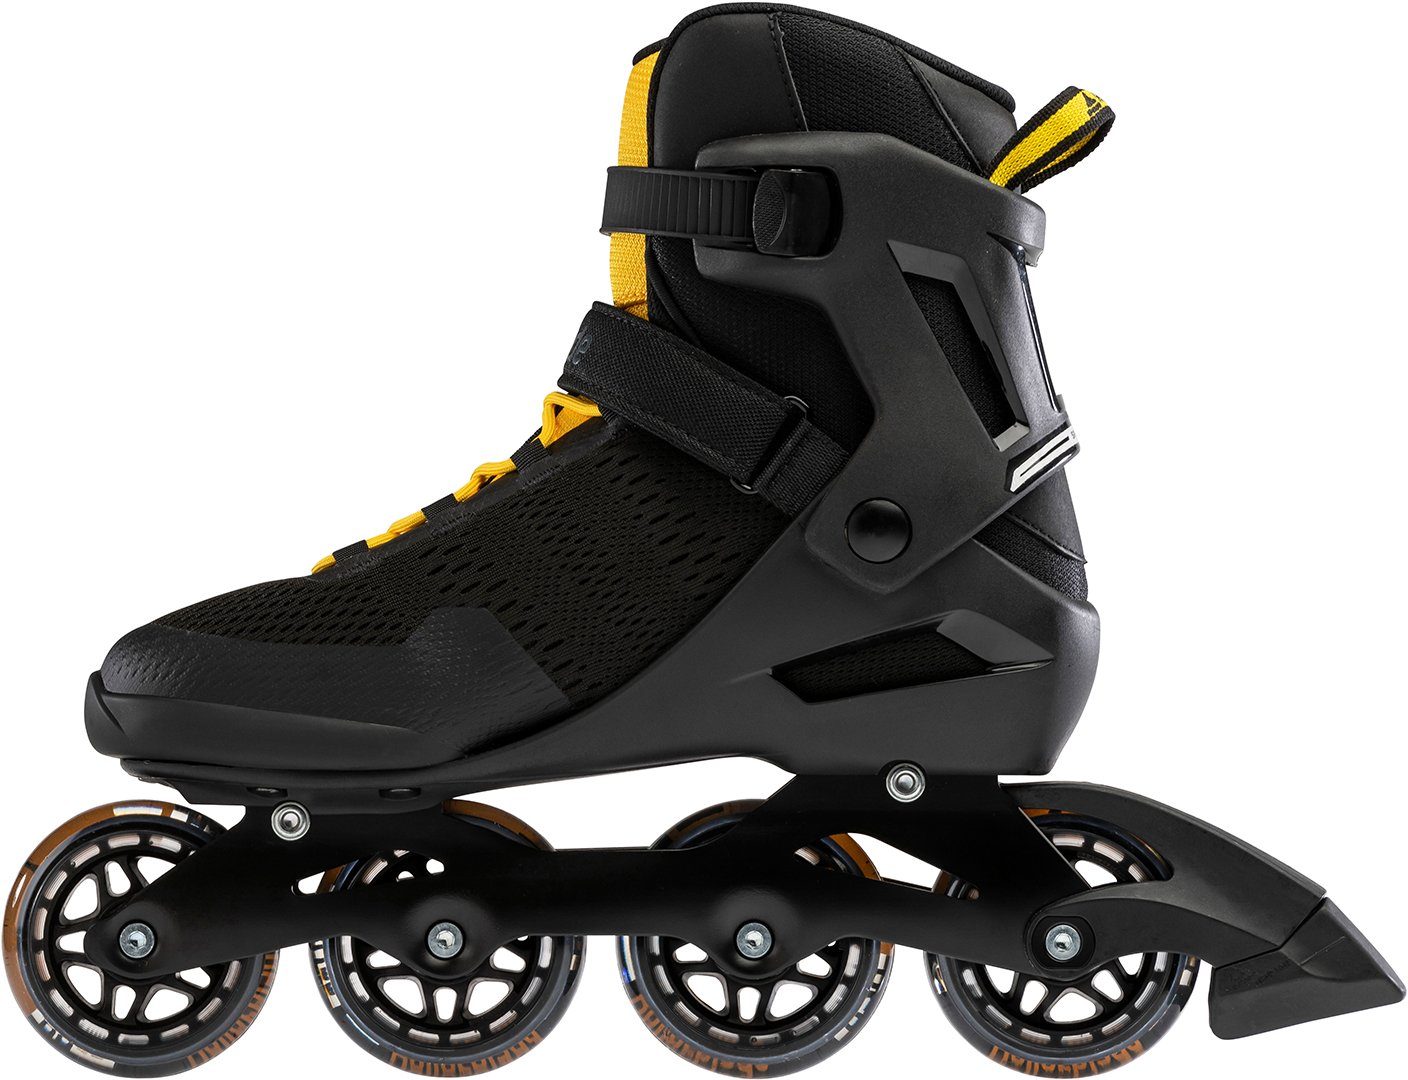 Sport Skateausrüstung ROLLERBLADE Inlineskates ROLLERBLADE SPARK 80 Inline Skate 2021 black/saffron yellow